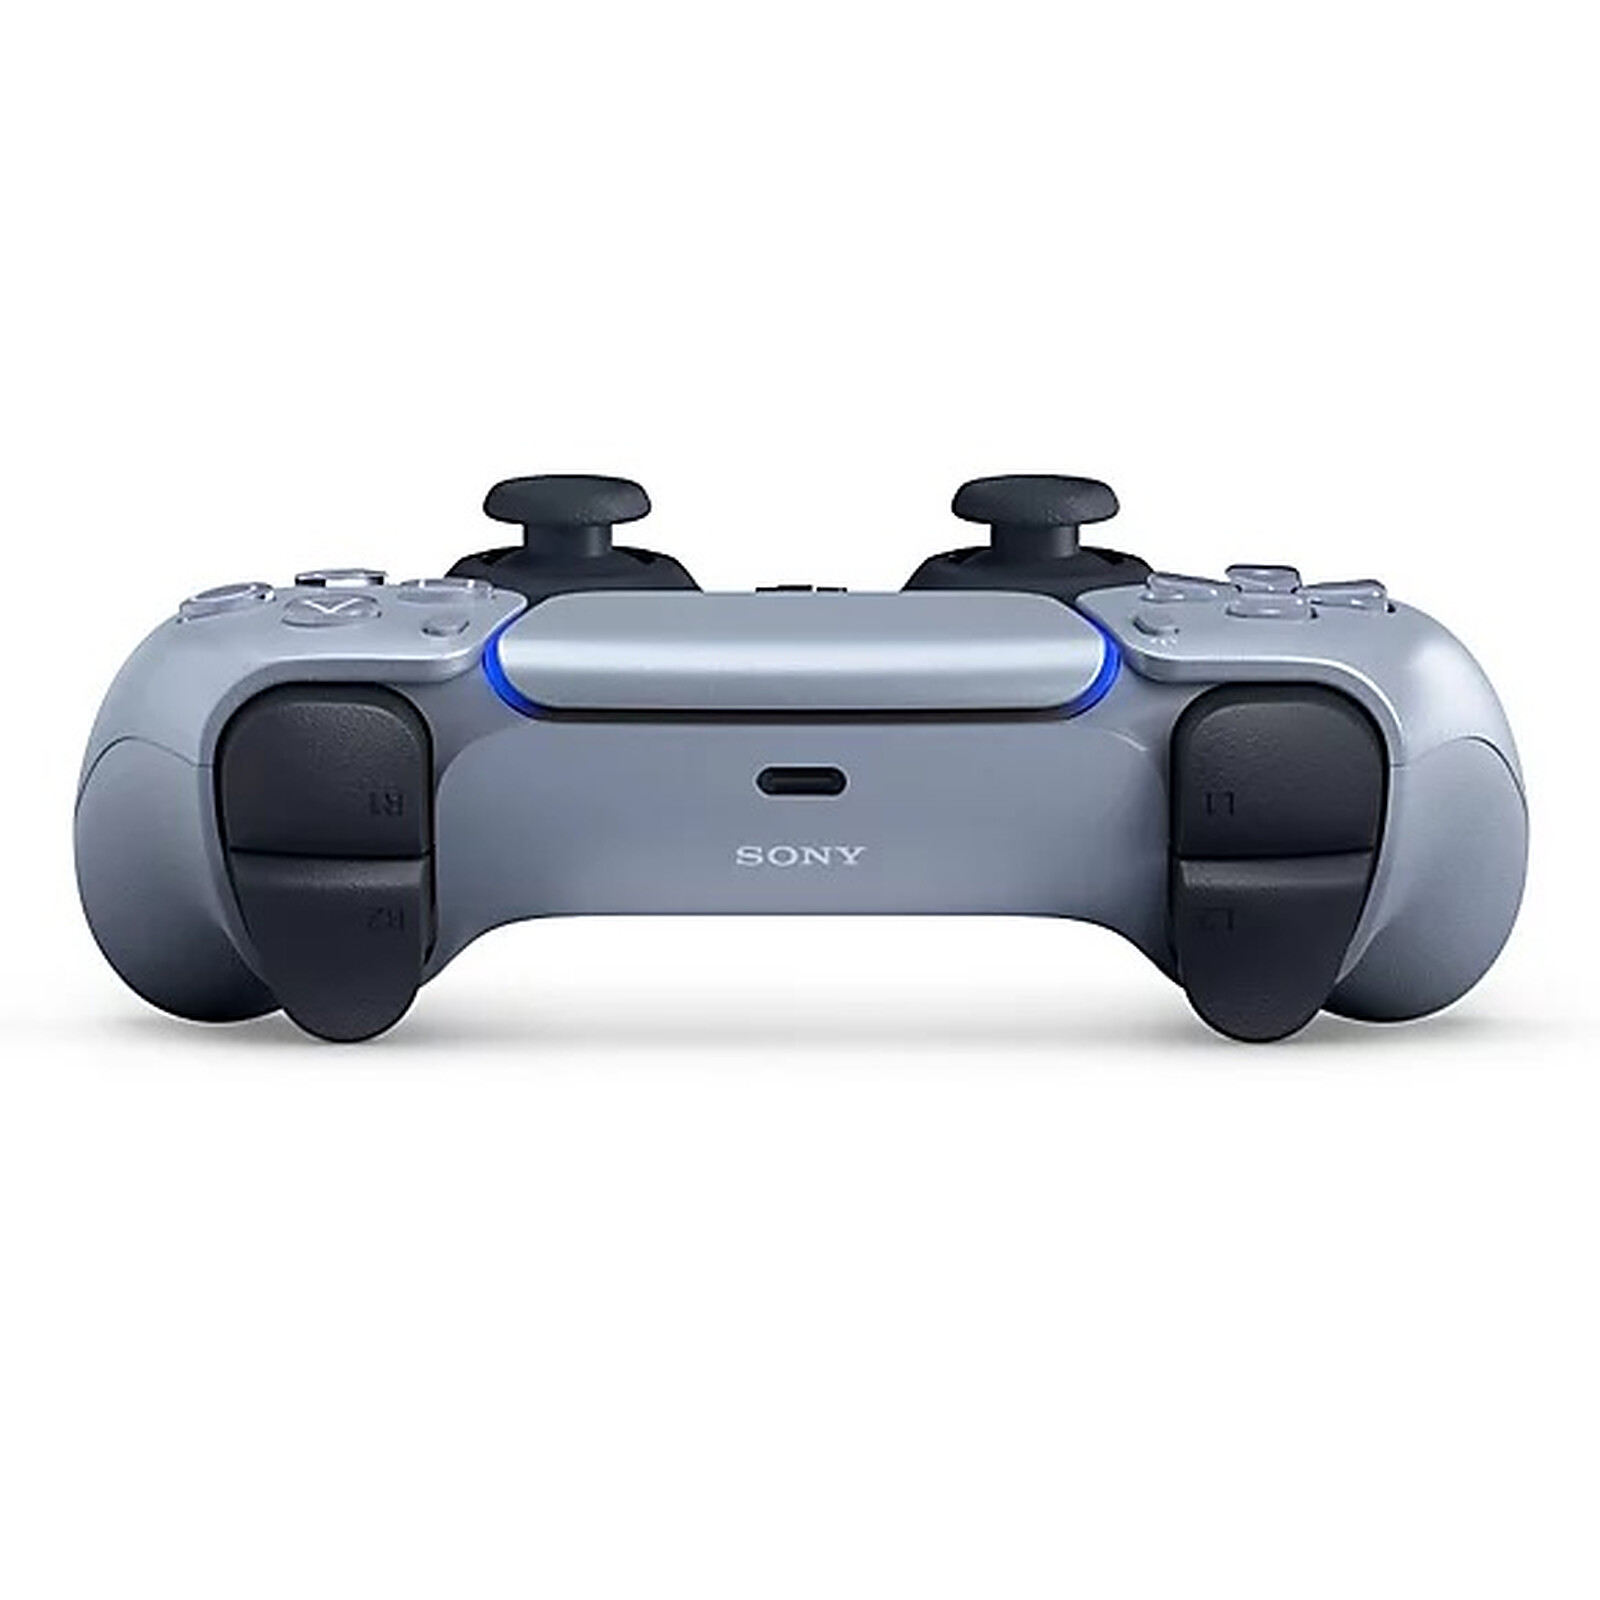 Sony presenta un mando a distancia para PlayStation 4